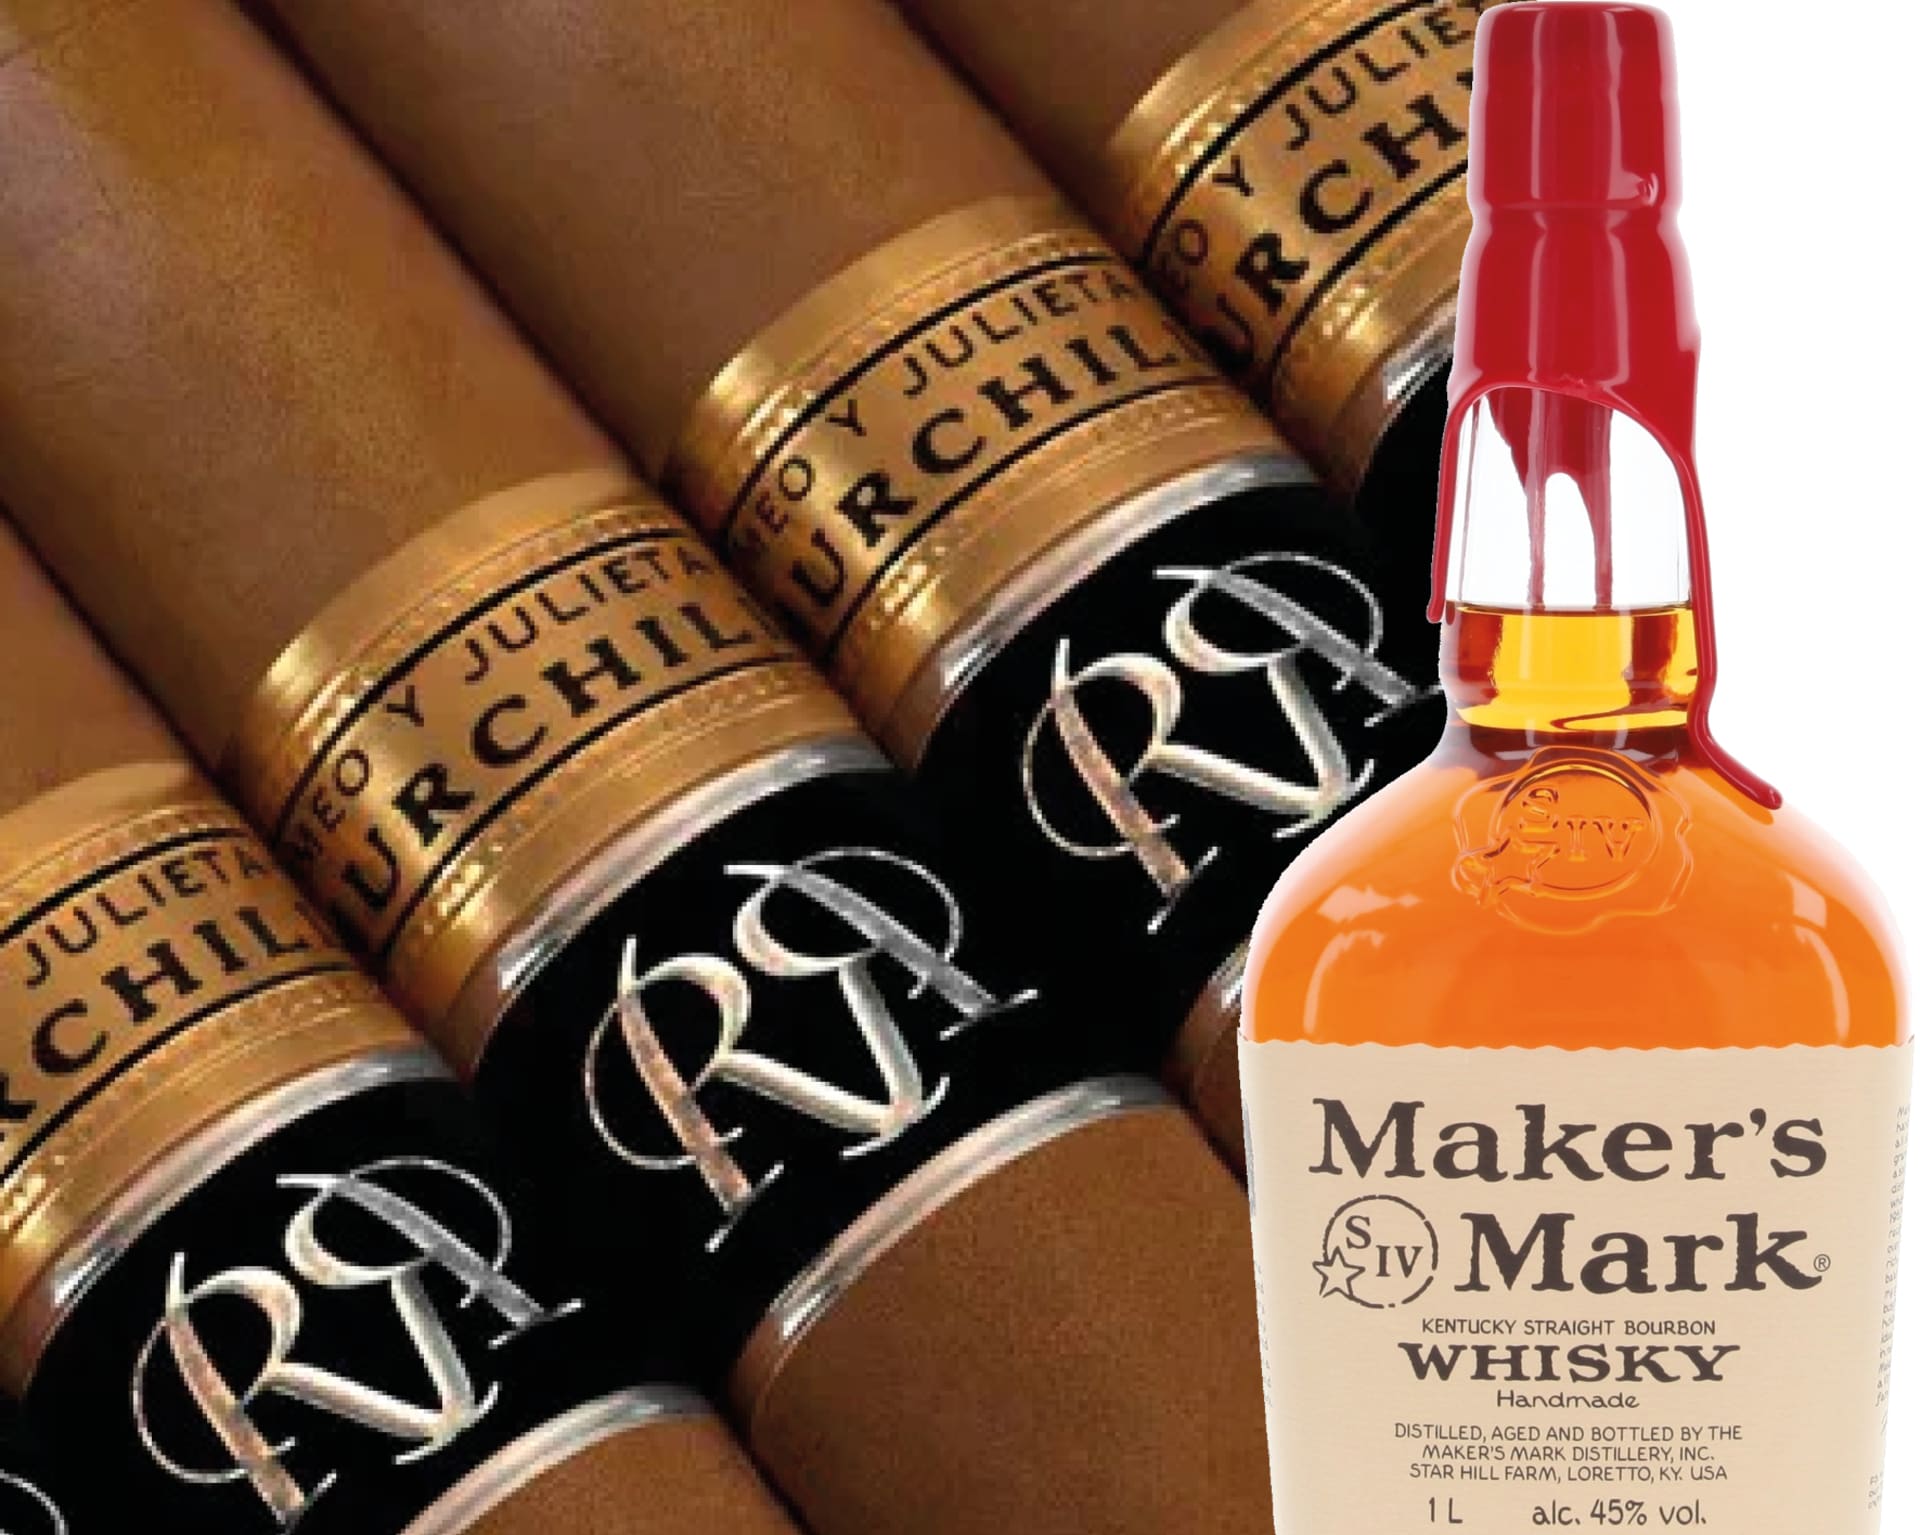 Jako dobrý společník pro doutníky Romeo y Julieta Churchill se jeví třeba bourbon Makers Mark.